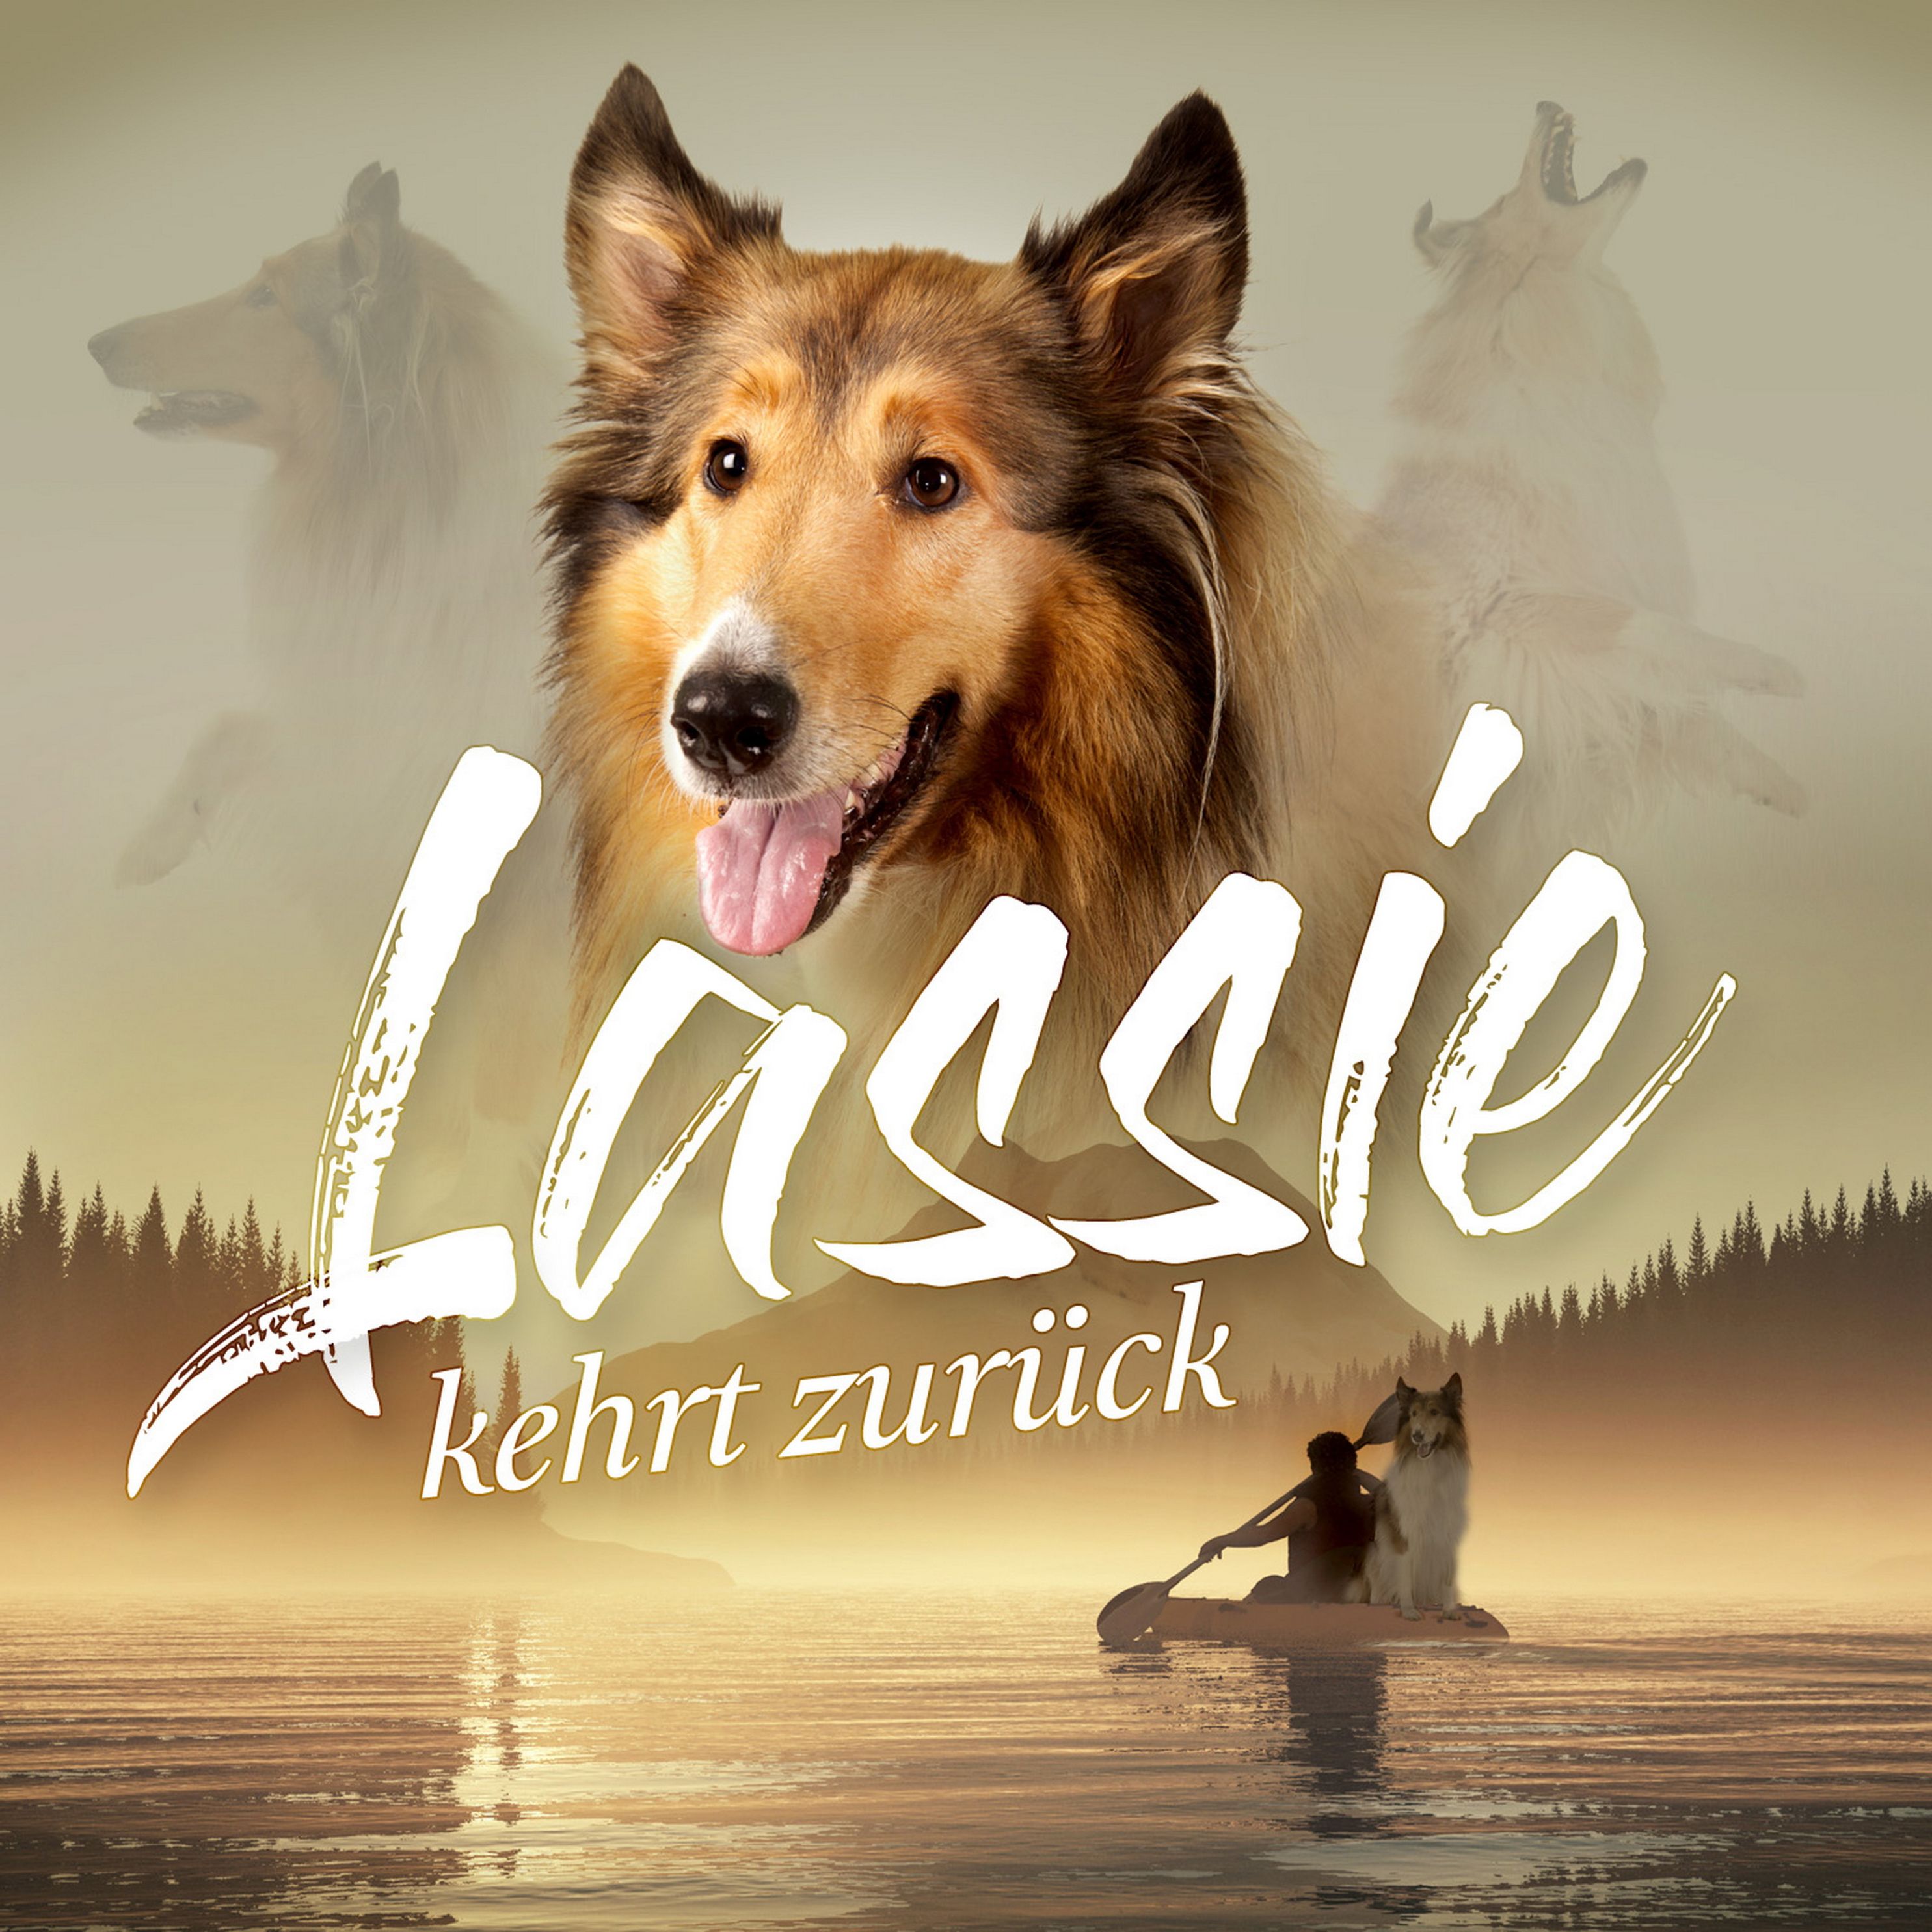 Lassie kehrt zurück Hörbuch sicher downloaden bei Weltbild.de